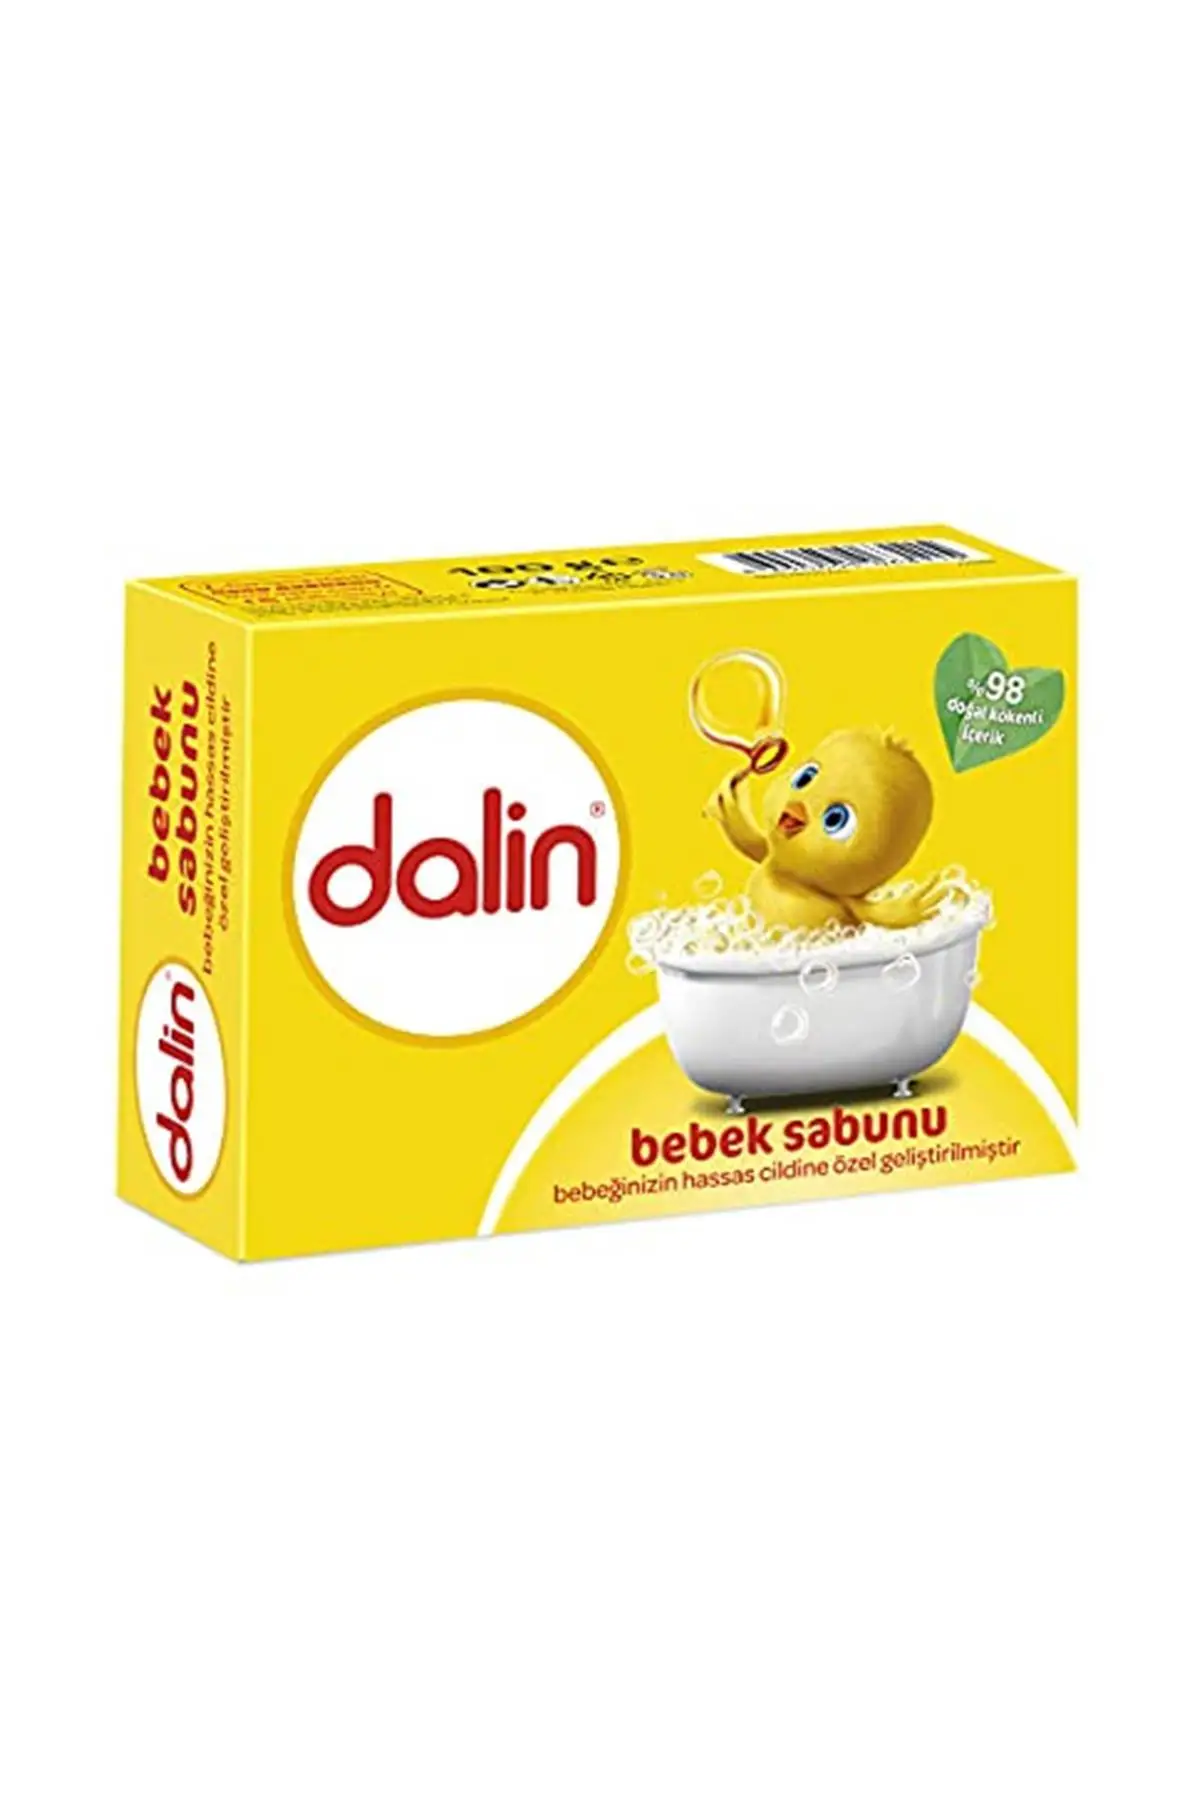 

Бренд: Dalin Classic Solid мыло, посылка (1x Г) Категория: детское мыло